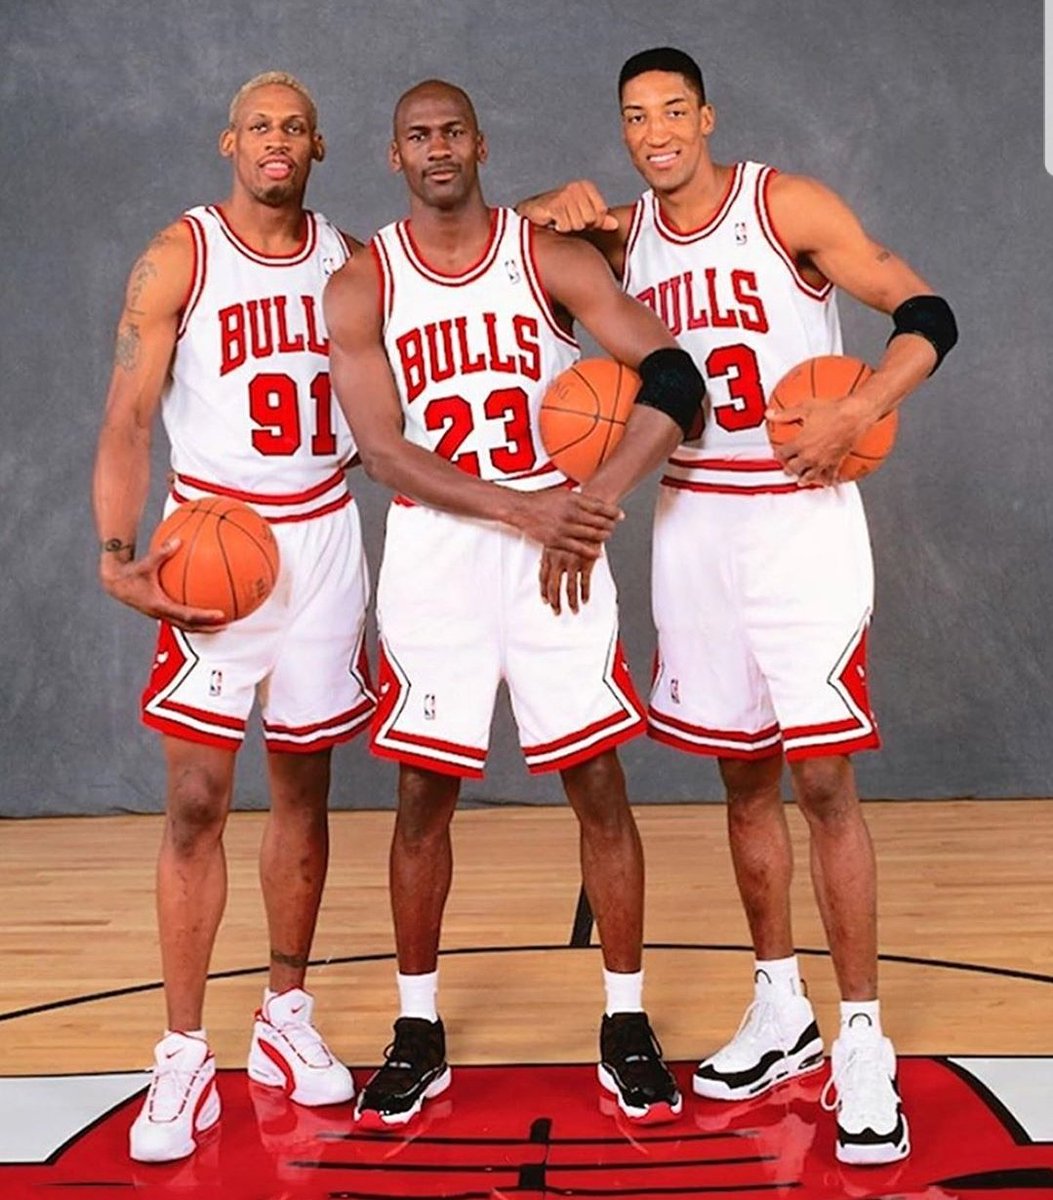 Avec la commercialisation de la mythique Nike Air Jordan 1, Jordan deviendra influent et démocratisera la NBA dans le monde, le tout en "créant" le style "sportwear". Avec Scottie Pippen et Dennis Rodman, Jordan forma un des meilleurs trios de l'histoire au sein des Bulls...